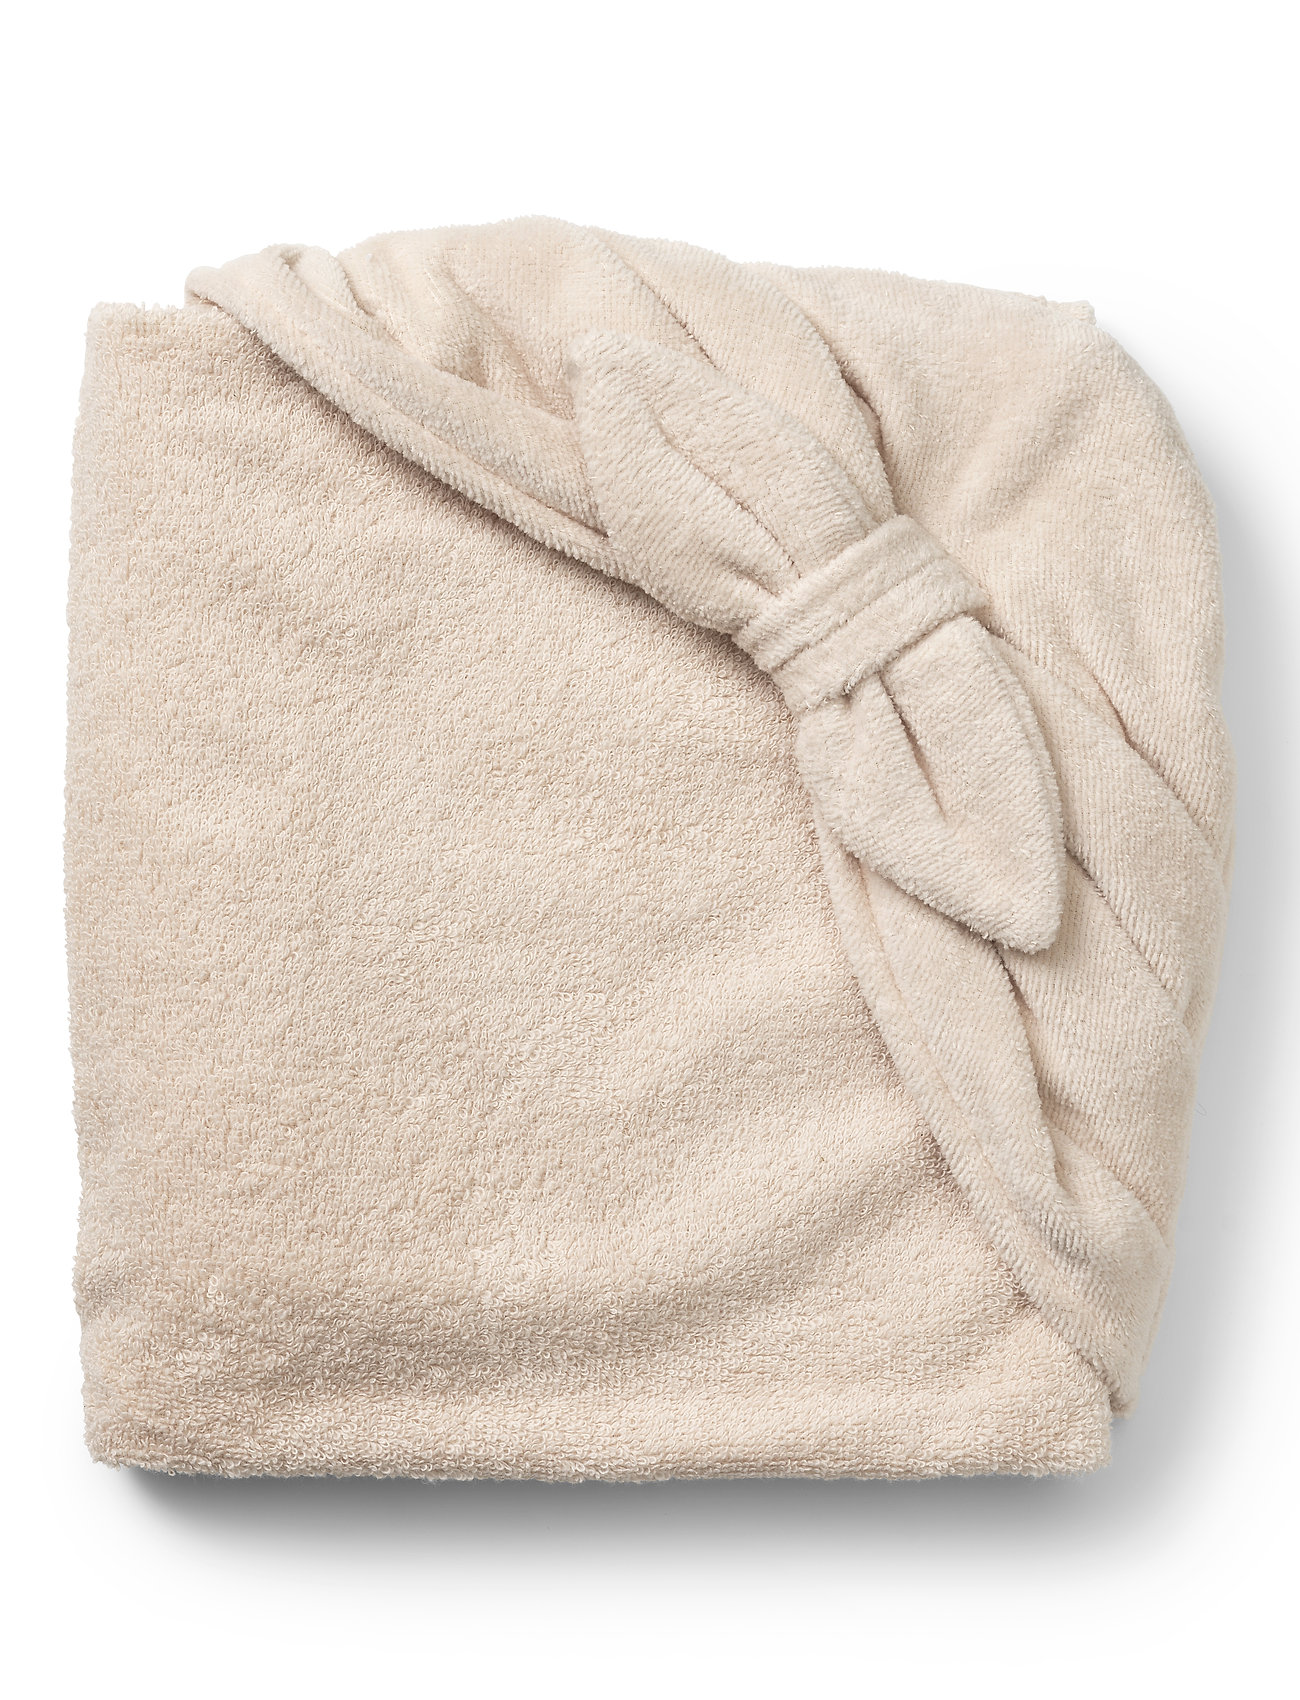 Elodie Details - Hooded Towel - Powder Pink - towels - lt pink - 1